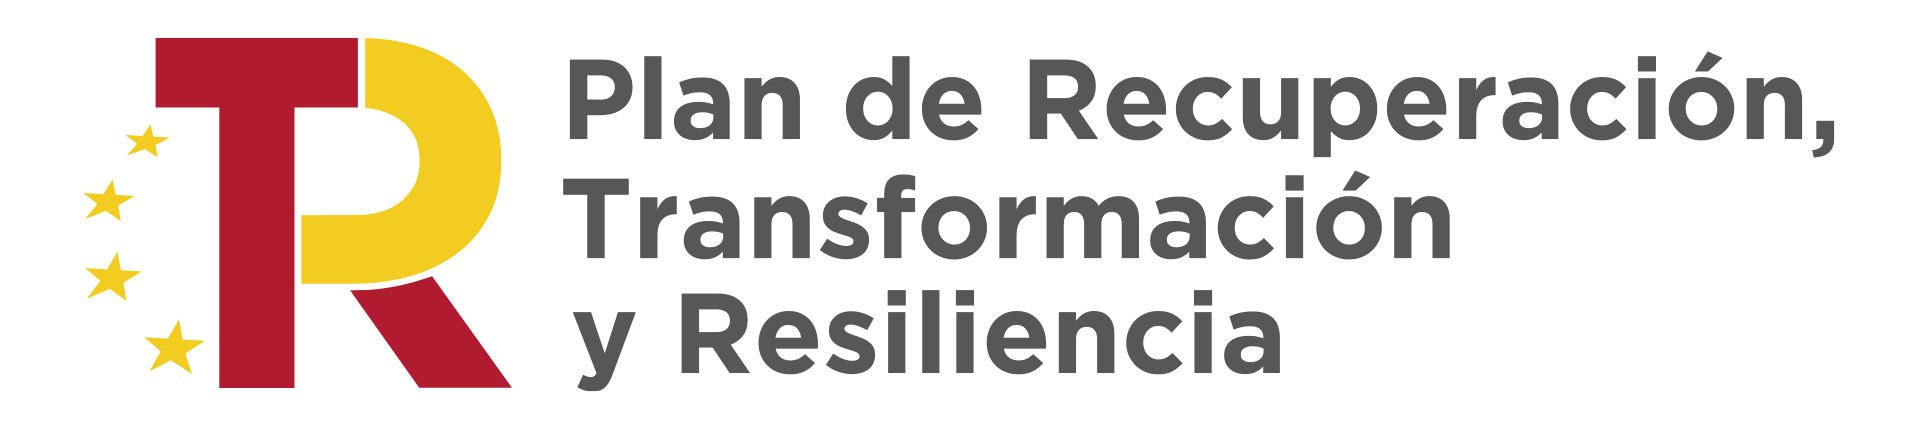 Madrid Downtown - Plan de recuperación trasformación y resiliencia